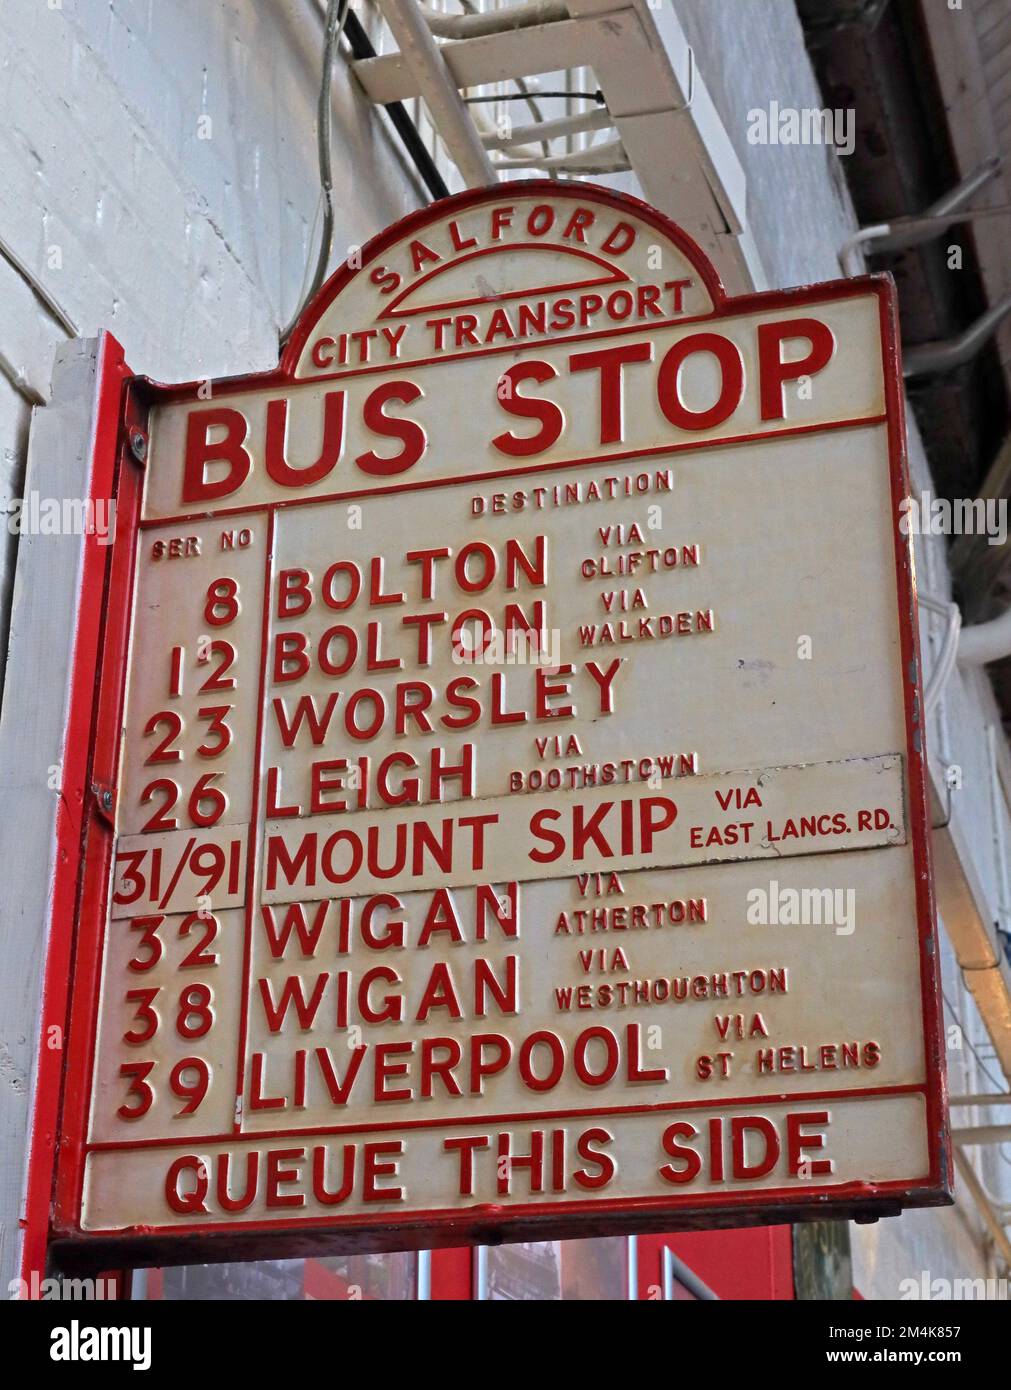 Salford City transport, arrêt de bus, destinations, Queue de ce côté, Bolton, Worsley, Leigh, Mount Skip, Wigan, Liverpool Banque D'Images